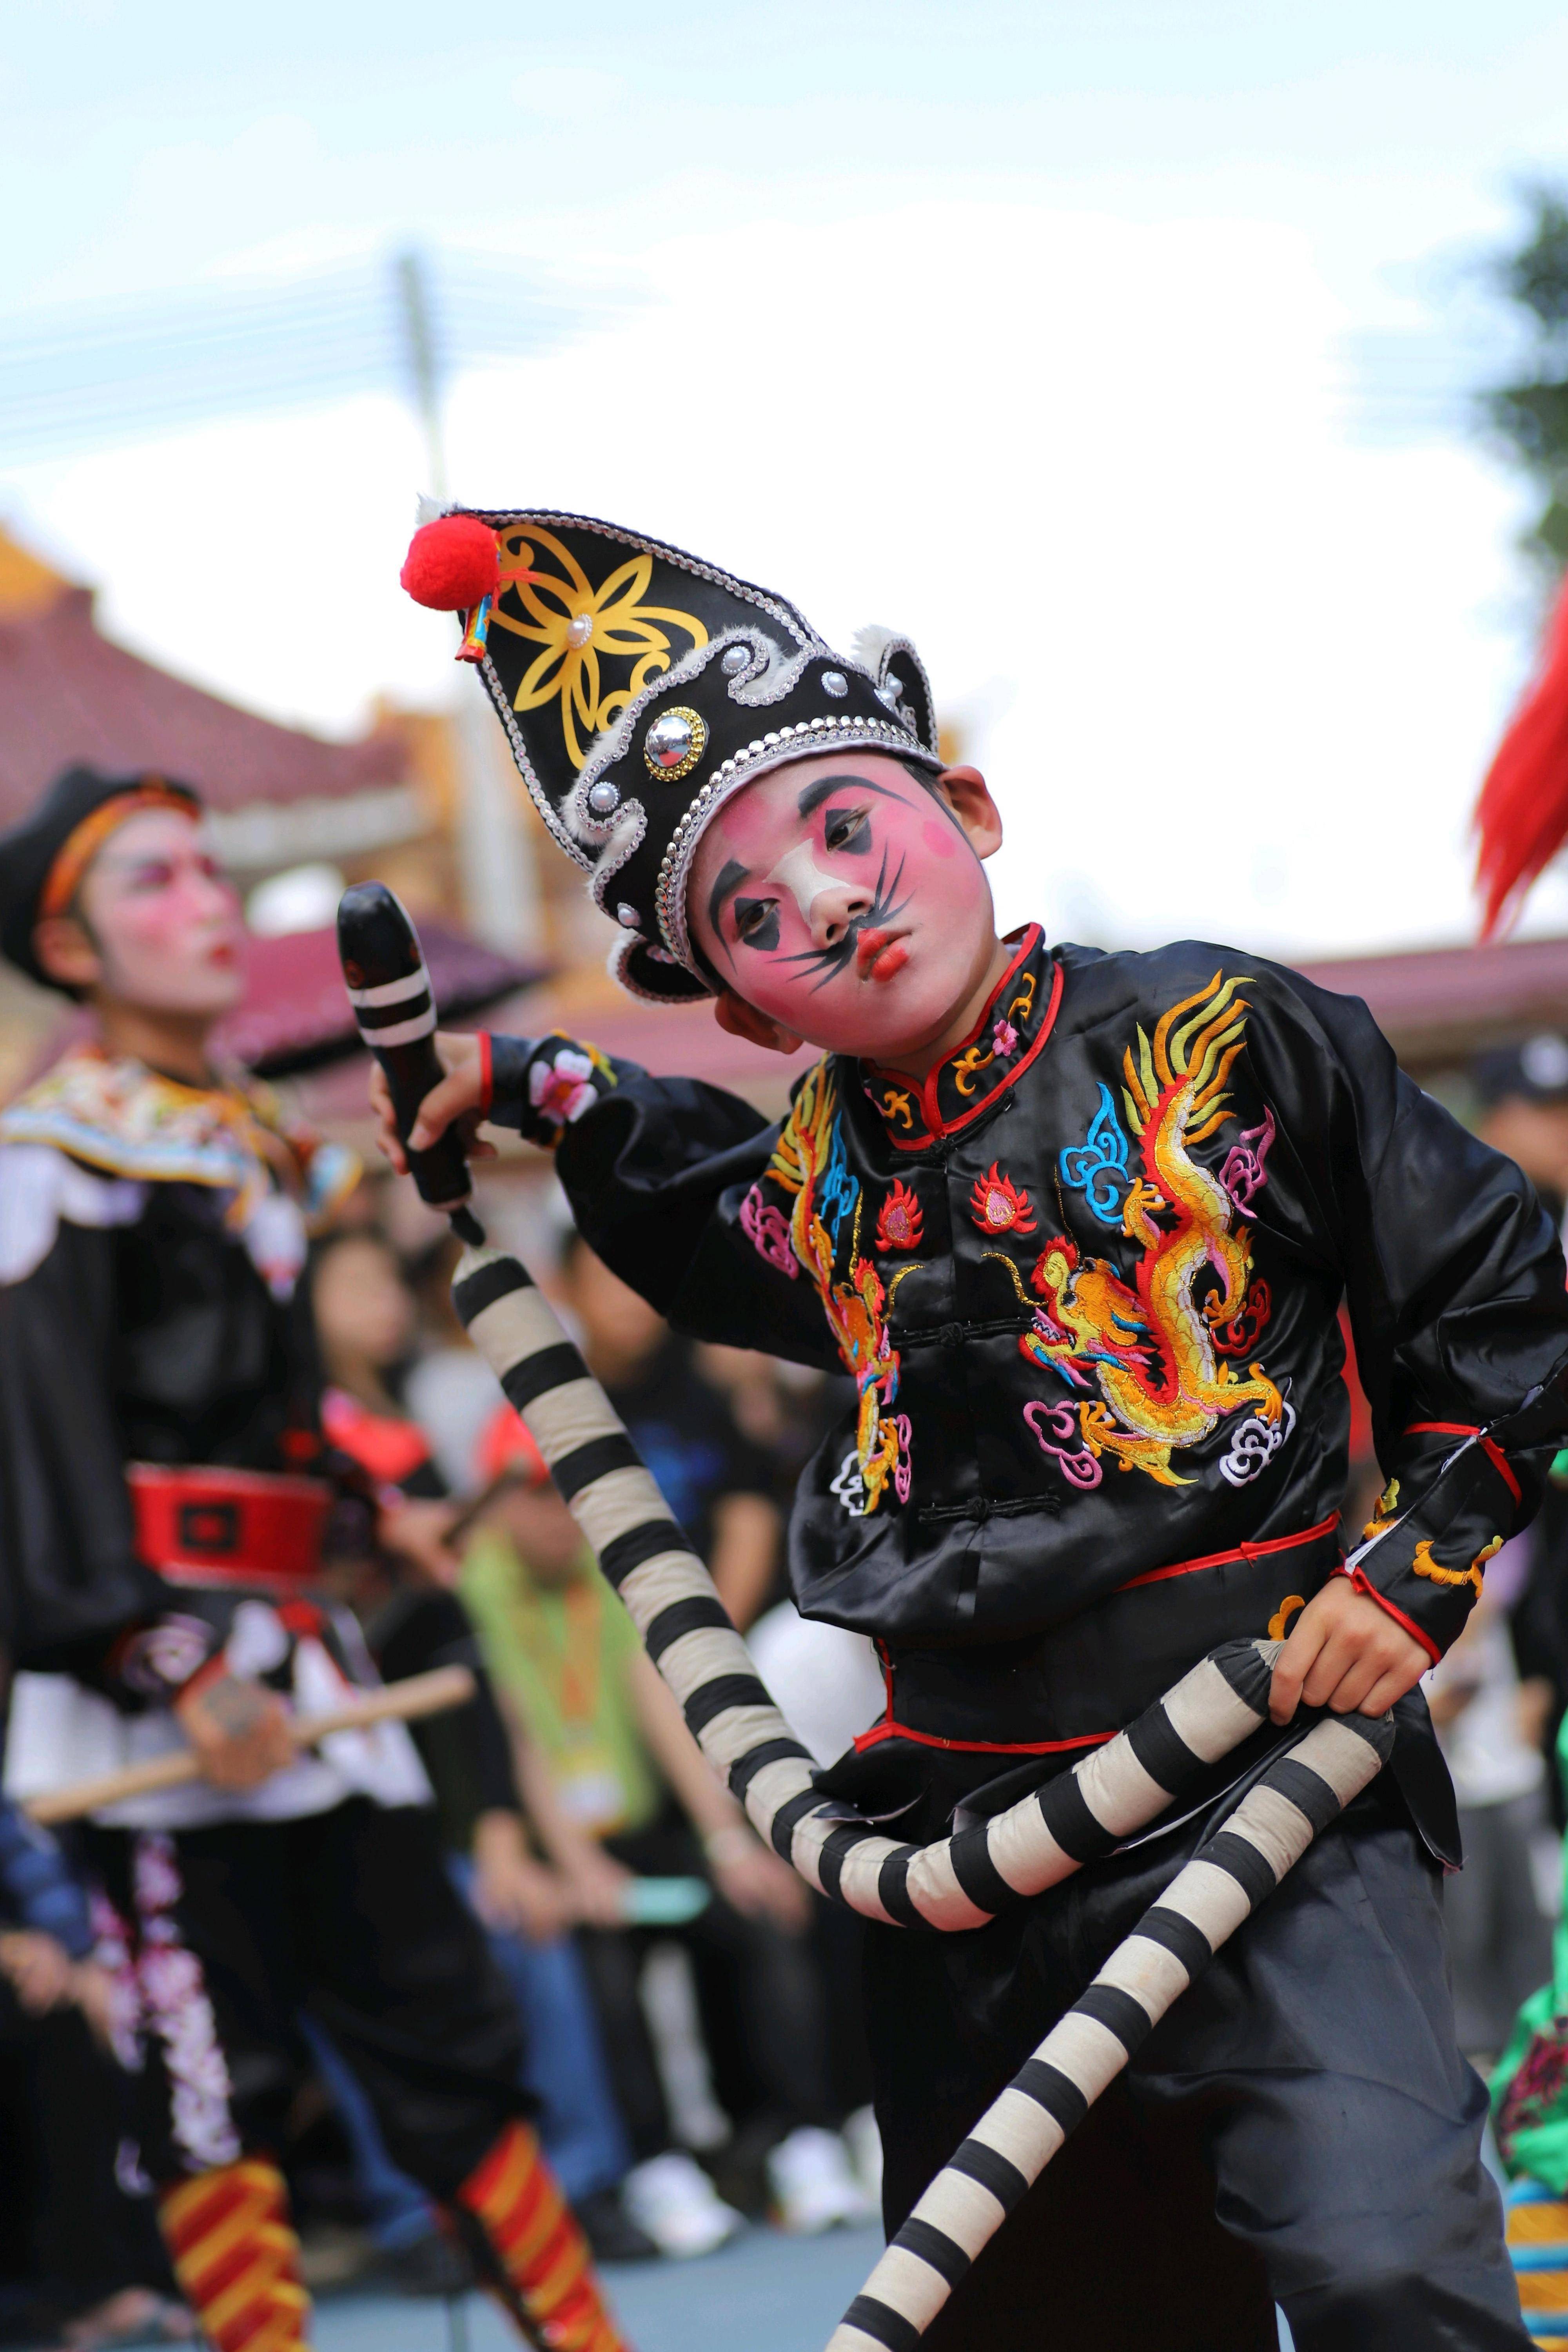 英歌舞巡游表演活动在深圳市深汕特别合作区小漠镇举行,身着彩色服装